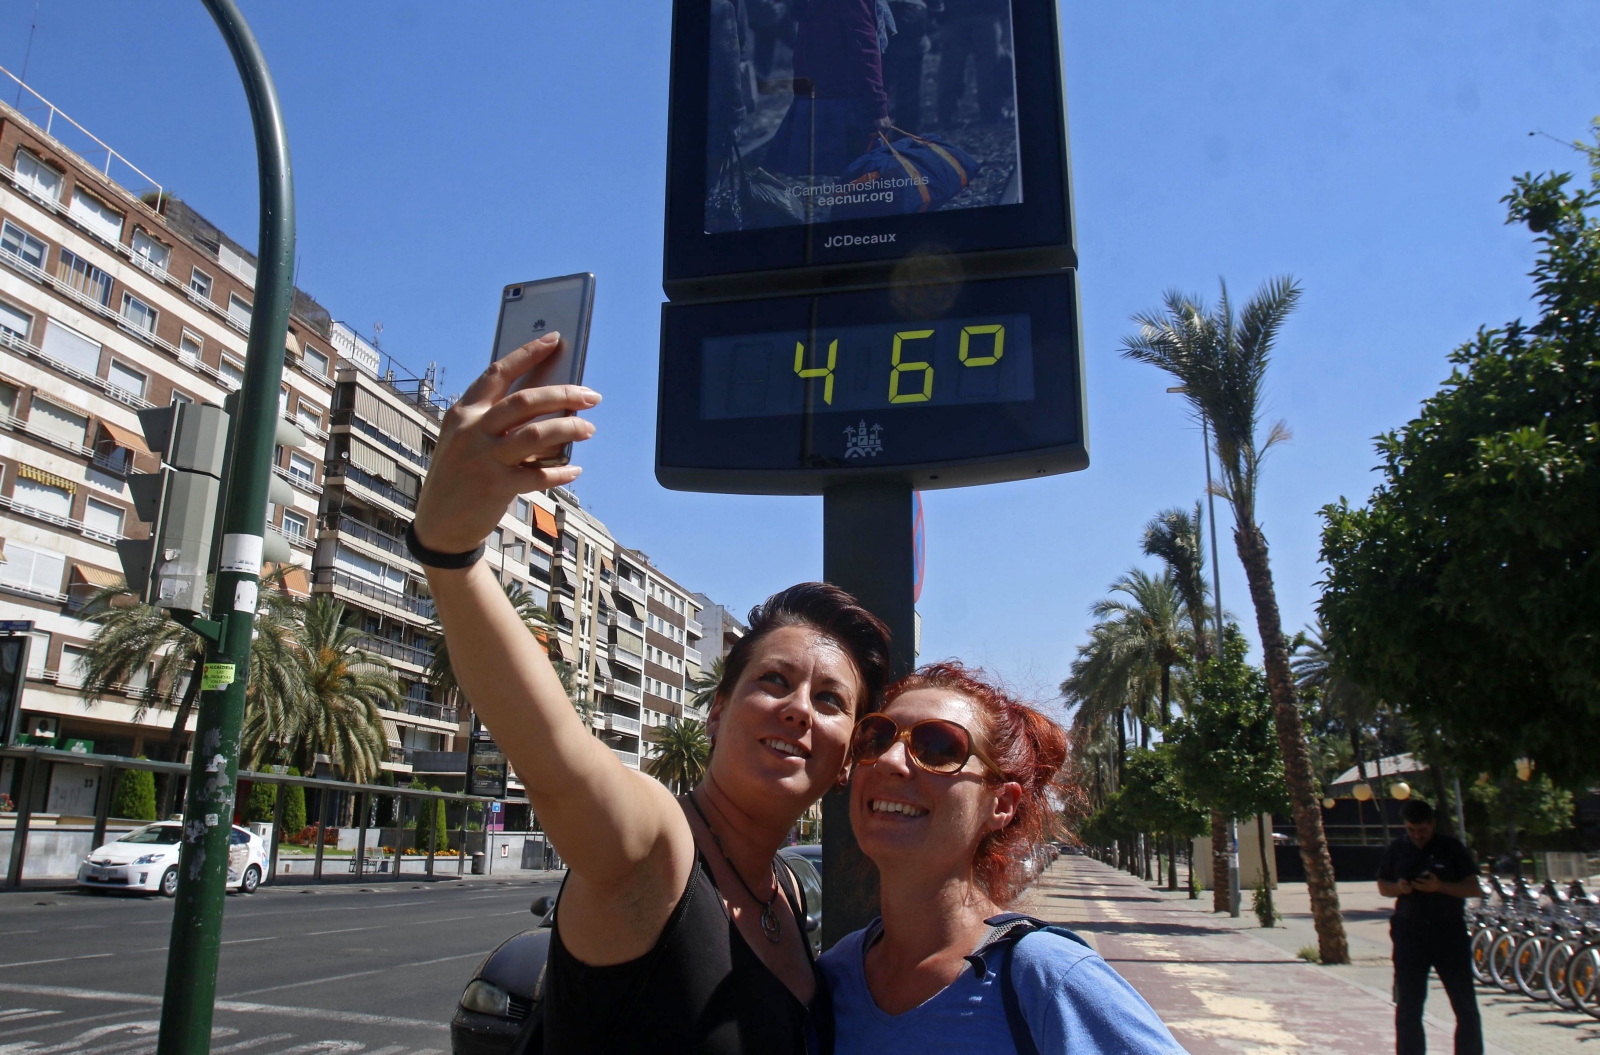 Fale upałów w Hiszpanii – termometr pokazuje 46 stopni Celsjusza, Kordoba, Hiszpania.